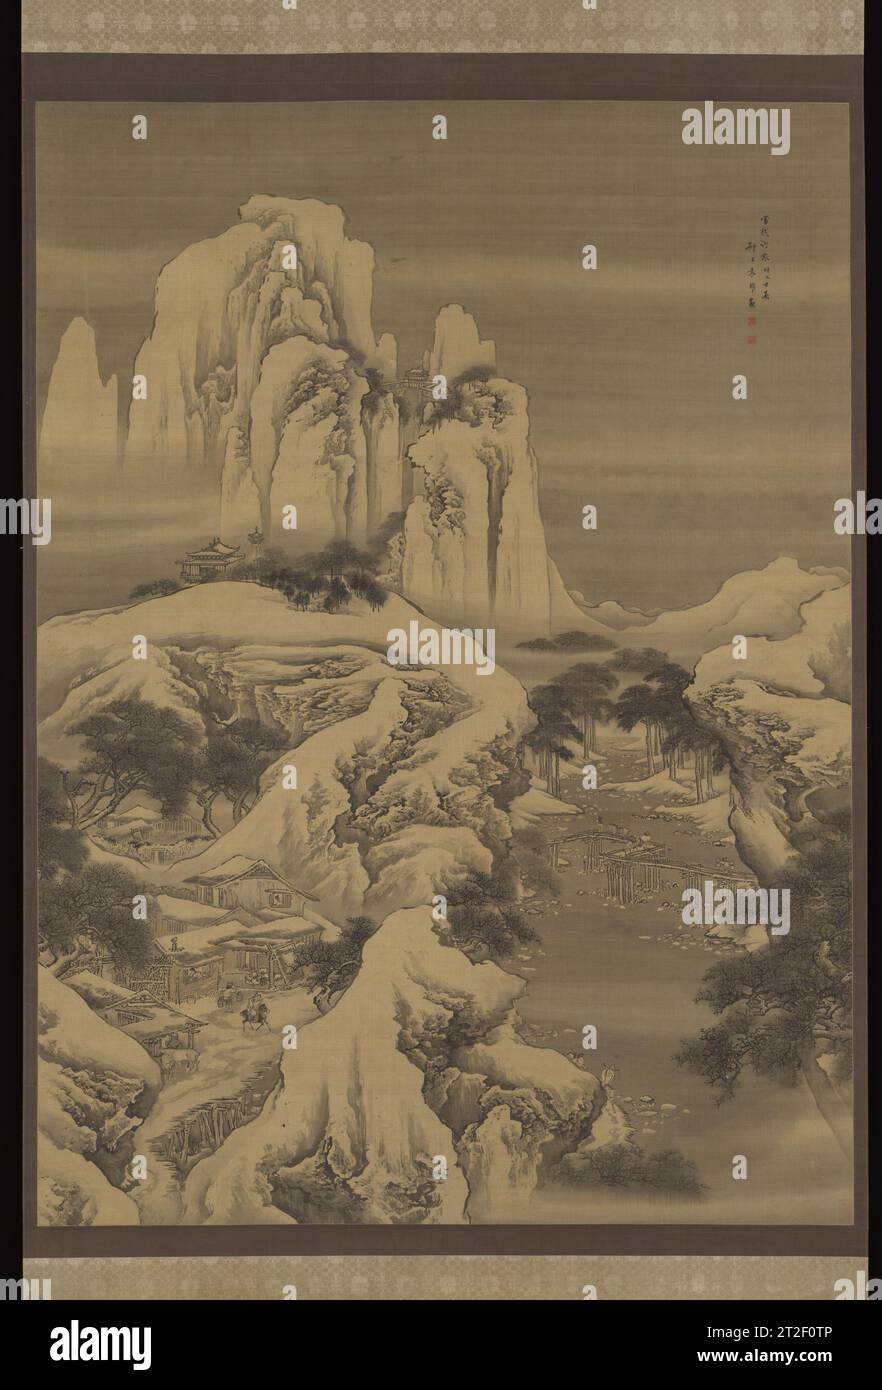 Auberge et voyageurs dans les montagnes enneigées Yuan Yao Chinois 1745 cette peinture, avec sa représentation extravagante des rigueurs de voyager dans les montagnes en hiver, aurait séduit les marchands de la province du Shanxi, au nord du pays. Inspirée par de fantastiques rocailles de jardin plutôt que par un paysage réel, la composition fantaisiste de Yuan Yao juxtapose un paysage montagneux vertical tortueux avec une vue de niveau où un pont en zigzag ludique coupe la vue en deux. Une gamme lointaine de pics abrupts est enjambée par un pont orné d'un pavillon - un jardin typique dans le terrain plat du sud de la Chine Banque D'Images